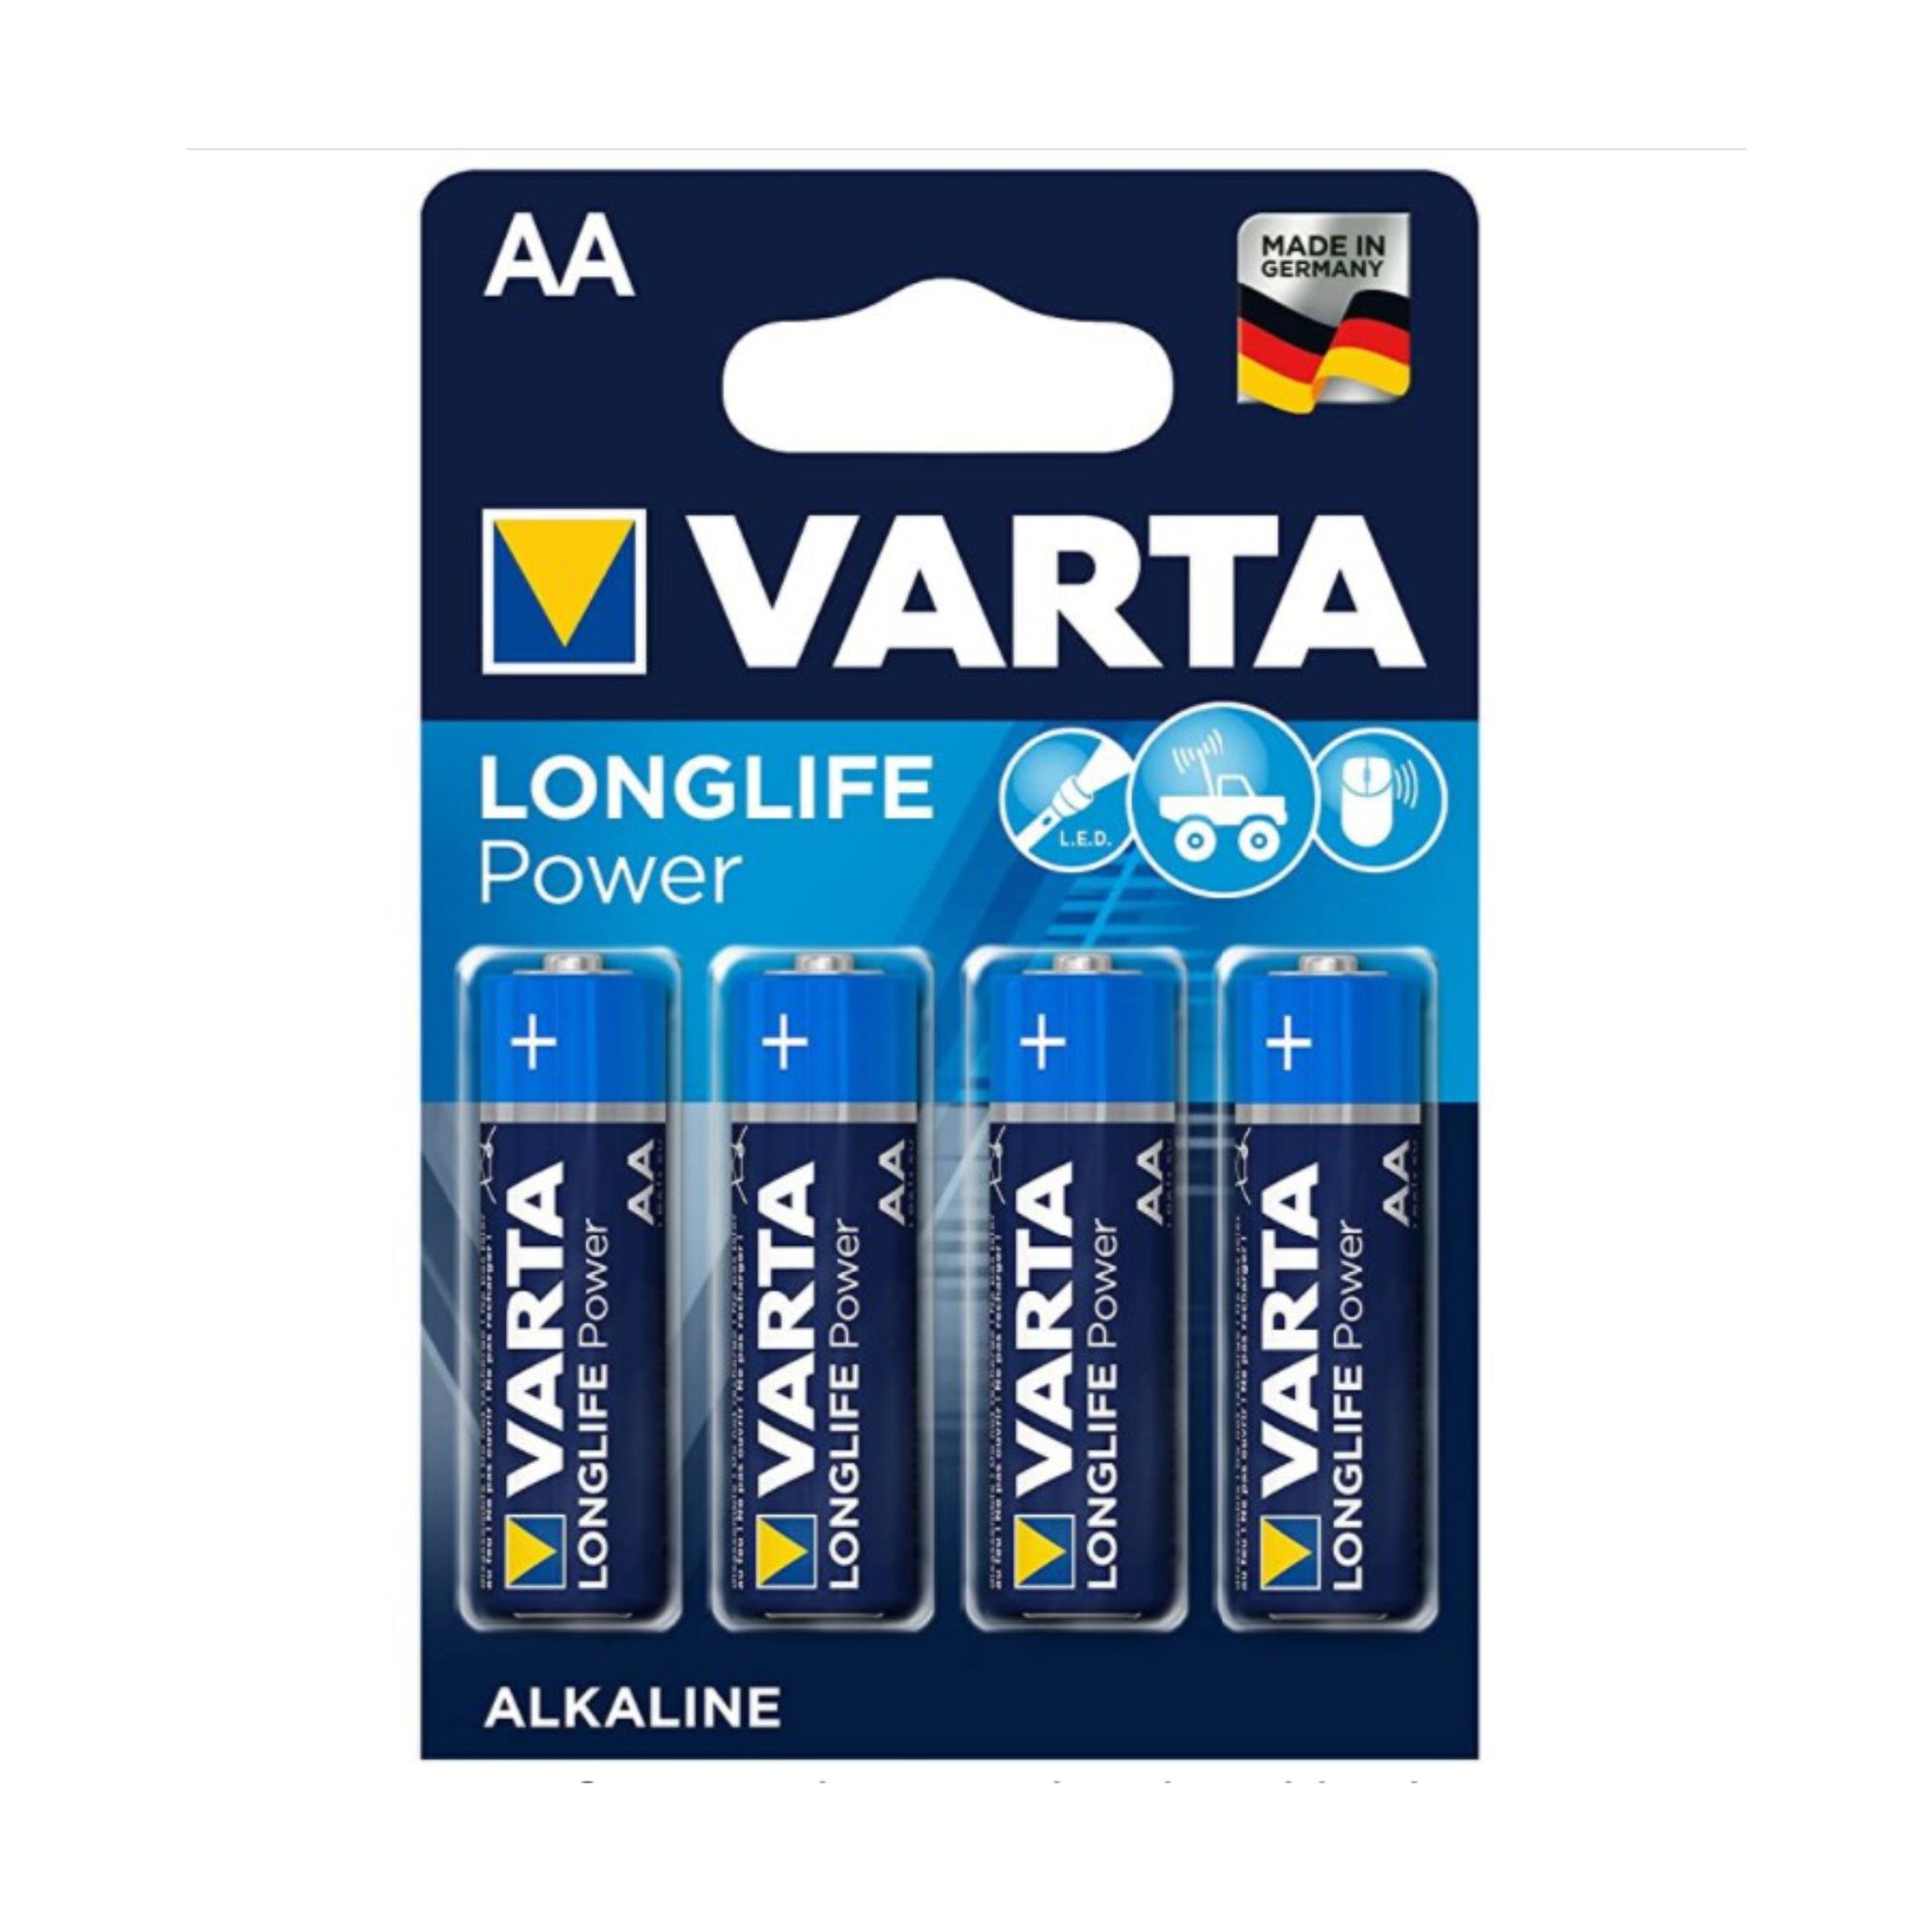 VARTA Longlife Power AA Mignon LR6 Batterie (4er Pack)